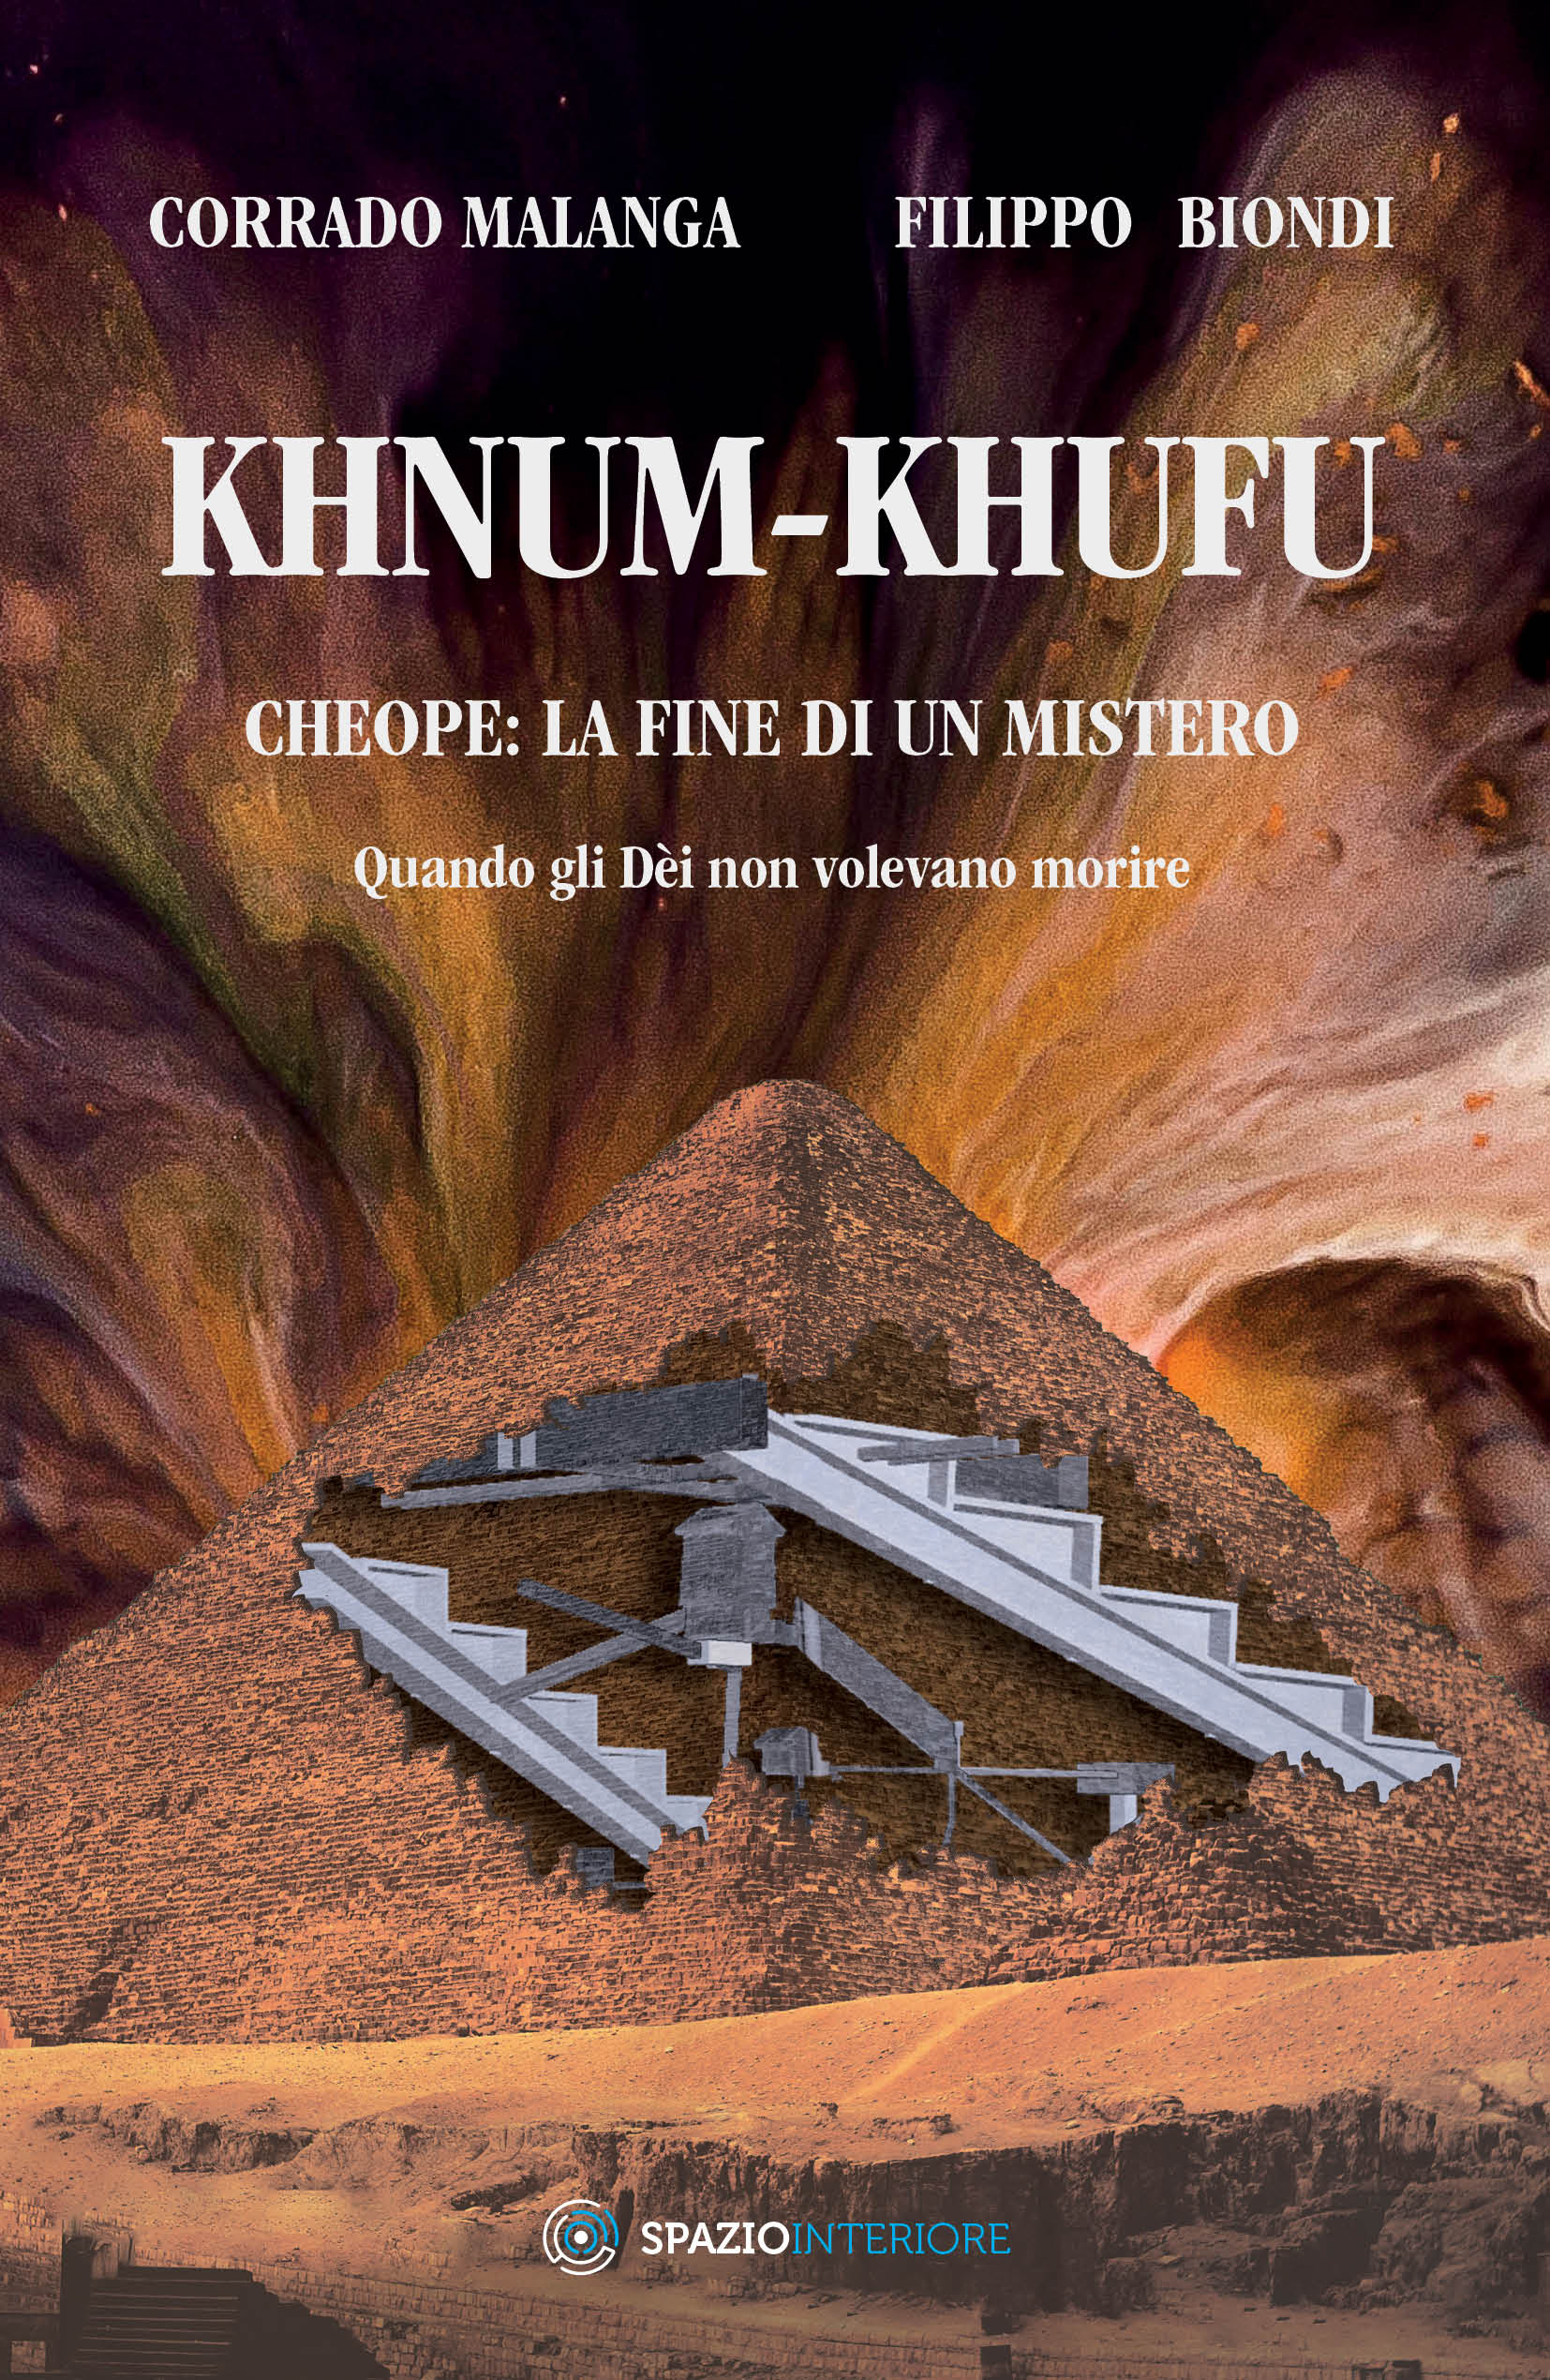 Khnum Khufu